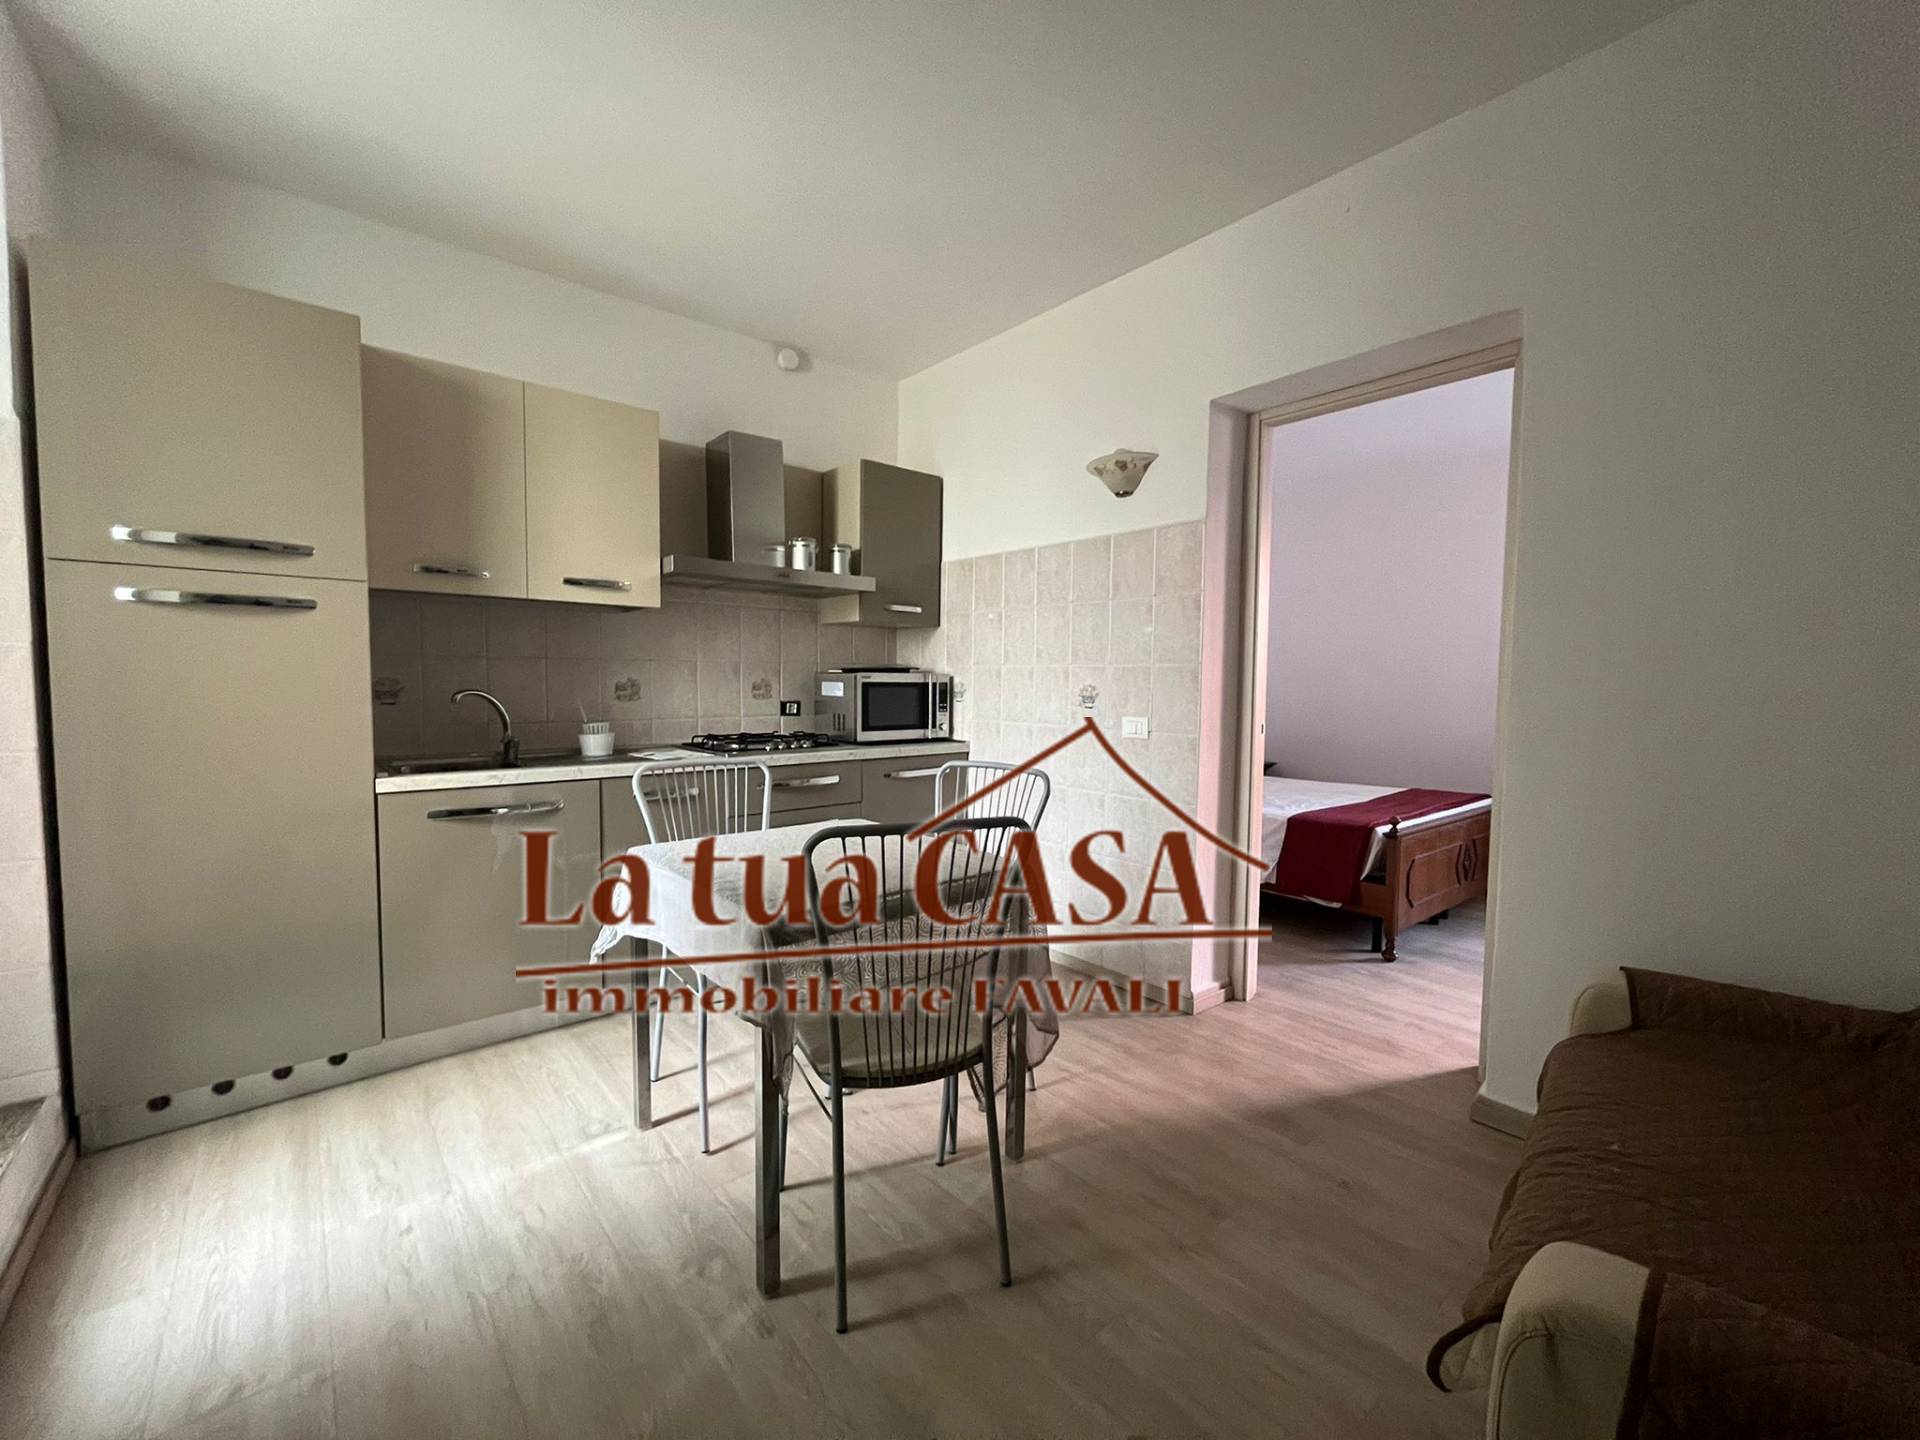 Appartamento in vendita a Loano, 3 locali, zona Località: RESIDENZIALE, prezzo € 225.000 | CambioCasa.it